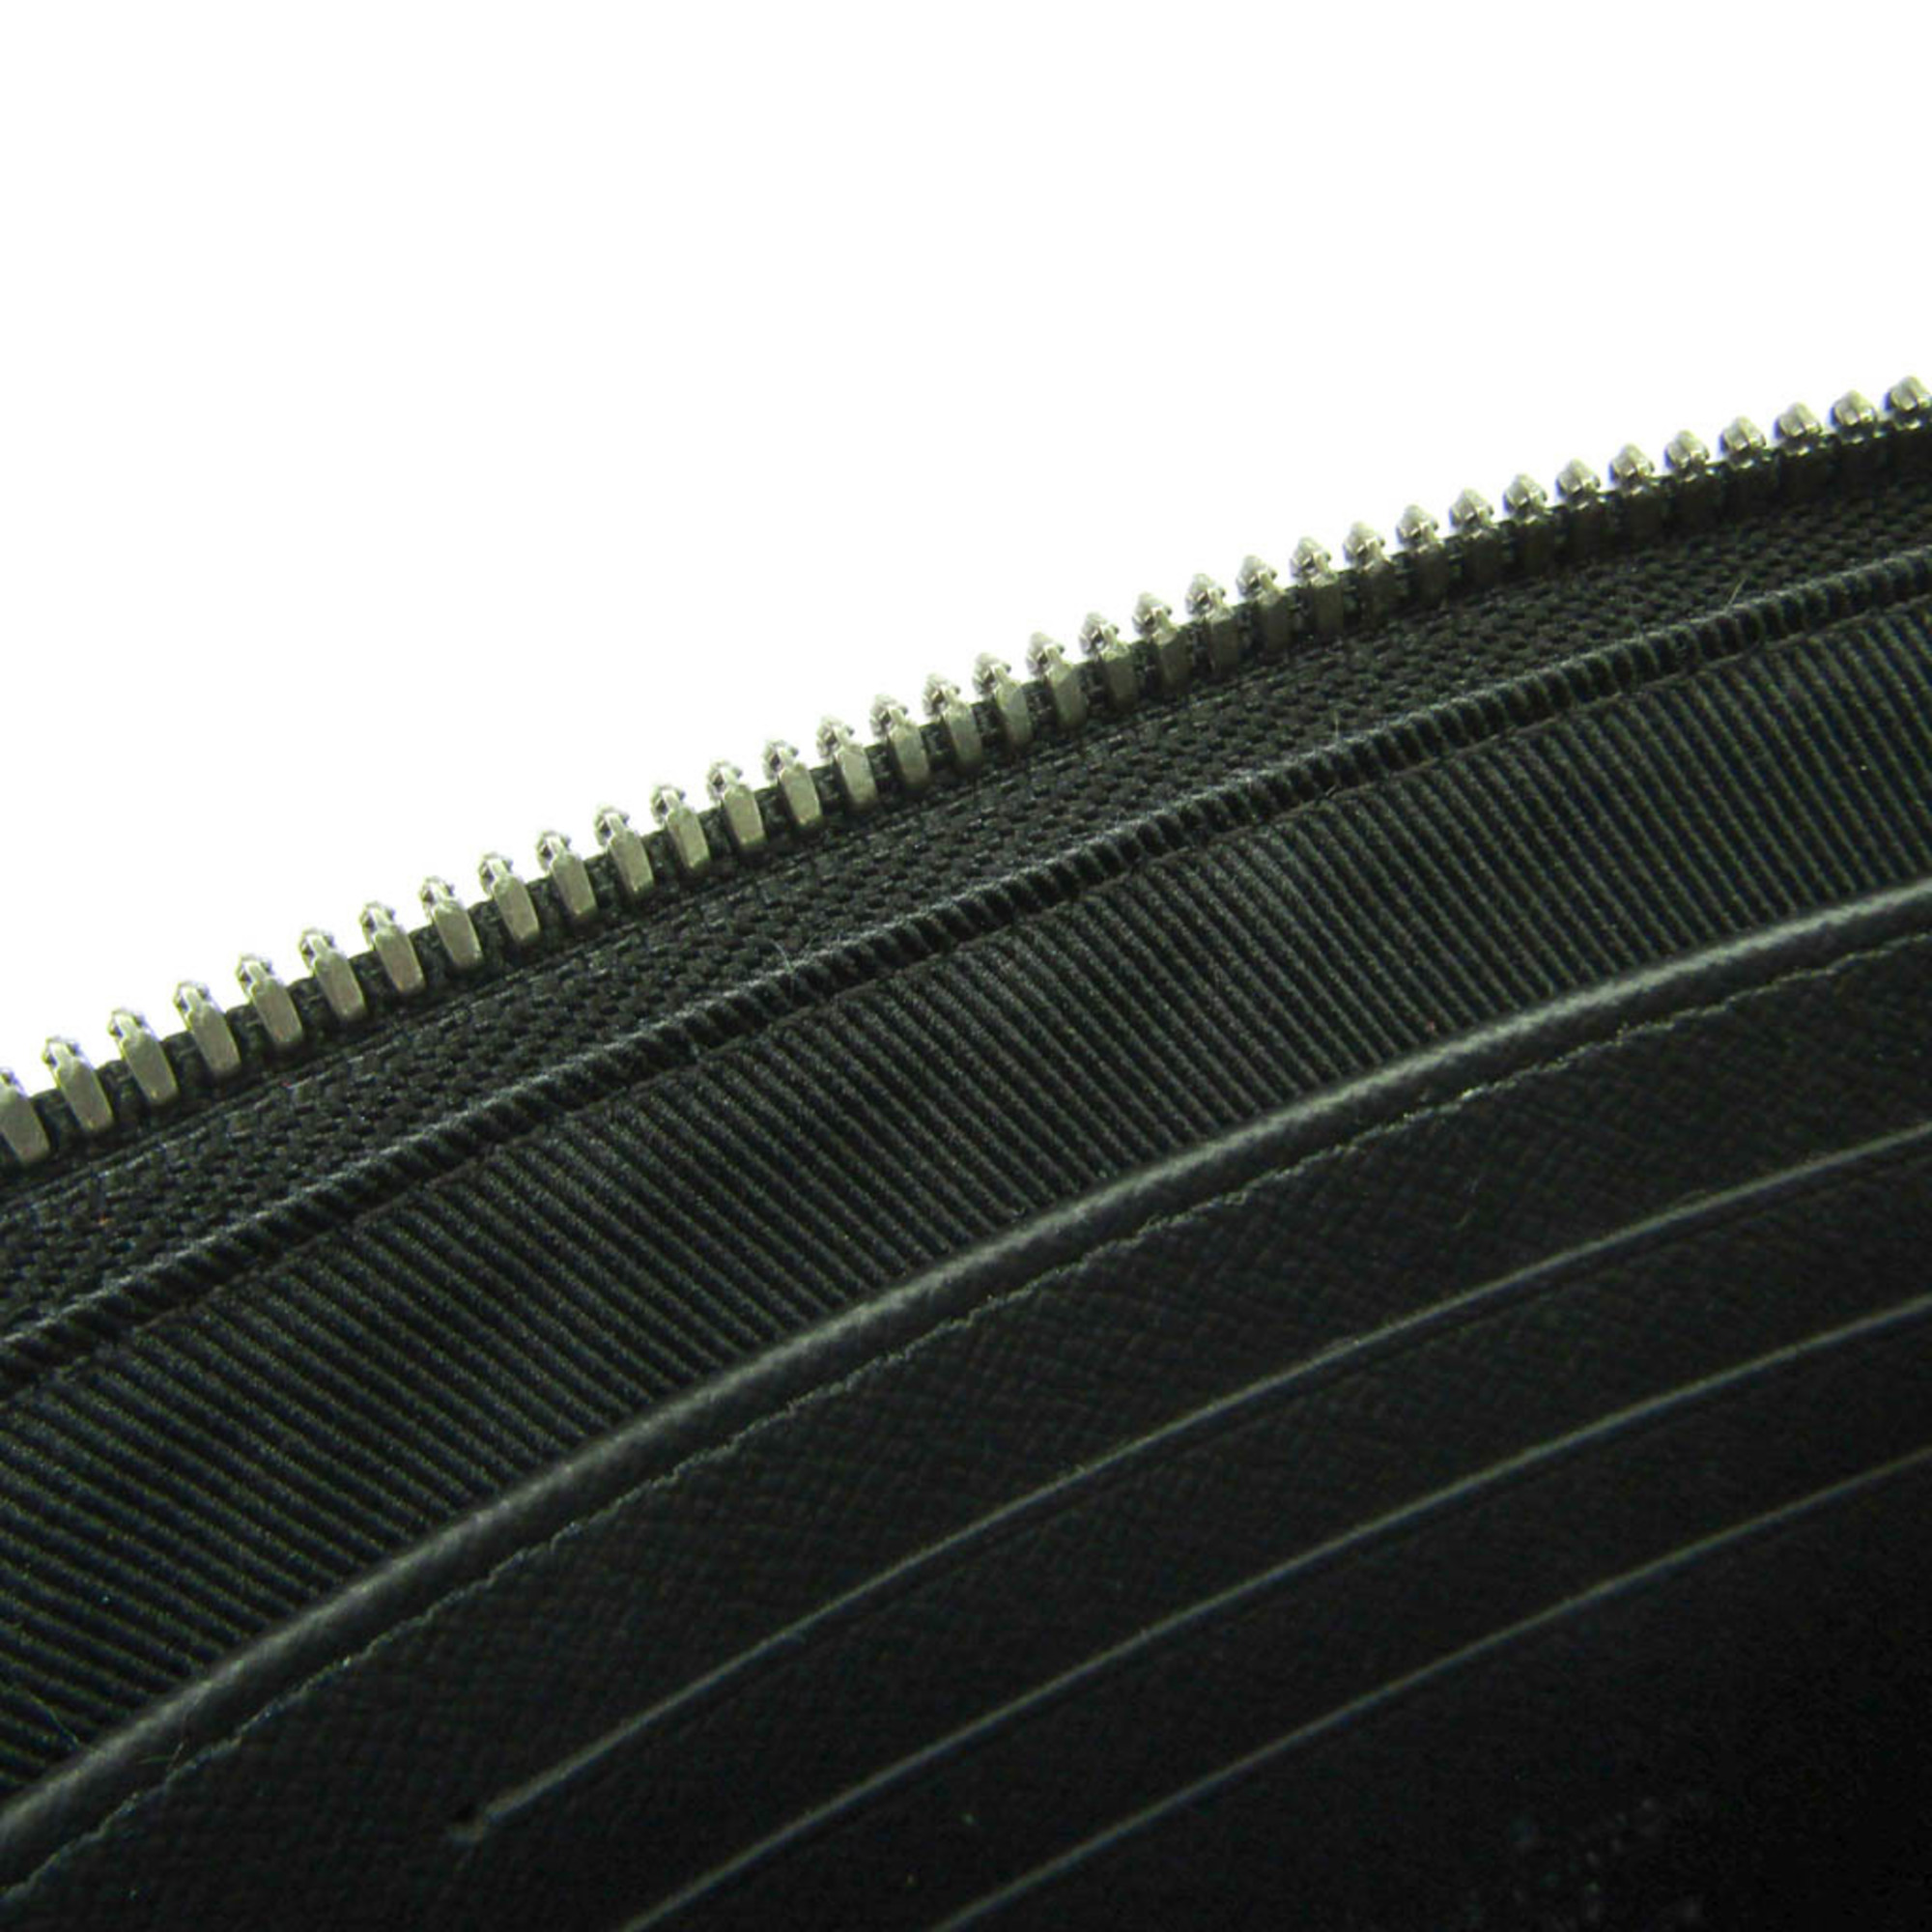 ルイ・ヴィトン(Louis Vuitton) モノグラム・エクリプス ポシェット・ディスカバリーPM M44323 メンズ クラッチバッグ,ポーチ モノグラムエクリプス